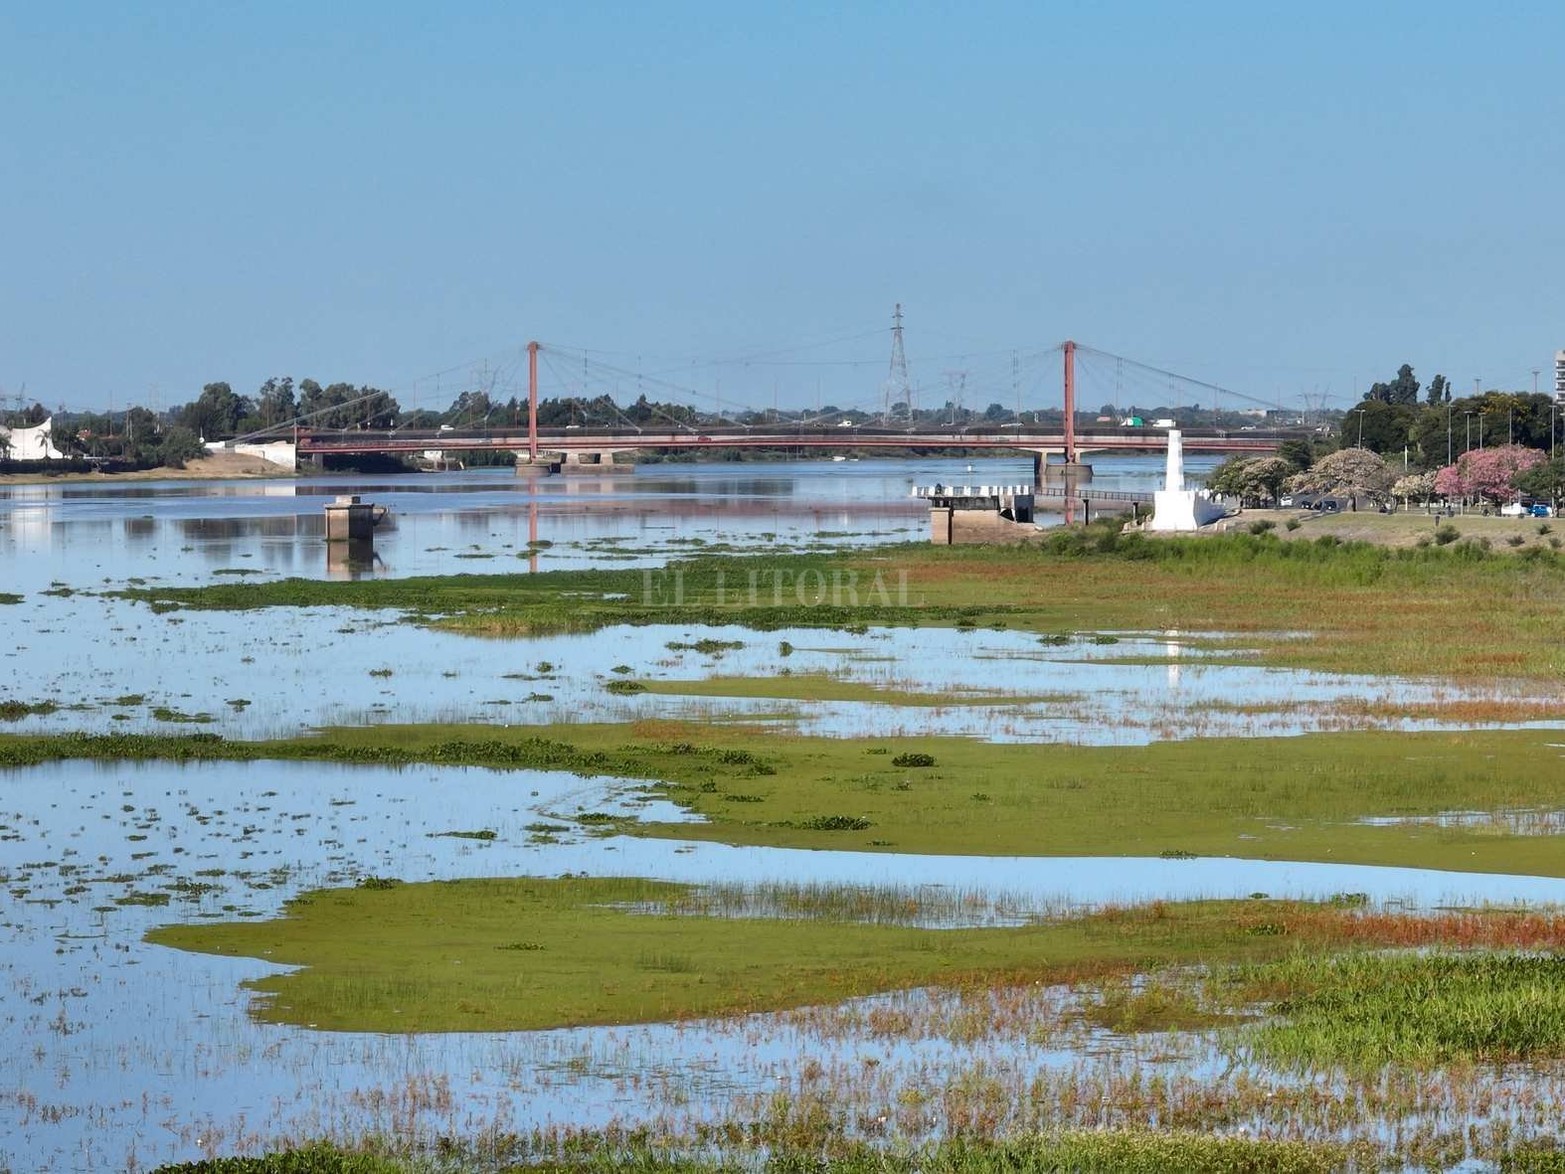 Desde el jueves 14 de abril el rio Paraná subió casi 70 cm. Este martes midió 2,57 metros en el puerto local. El paisaje ribereño cambió respecto al verano. Se cumplen las proyecciones del INA y el nivel se acerca a los 3 metros..